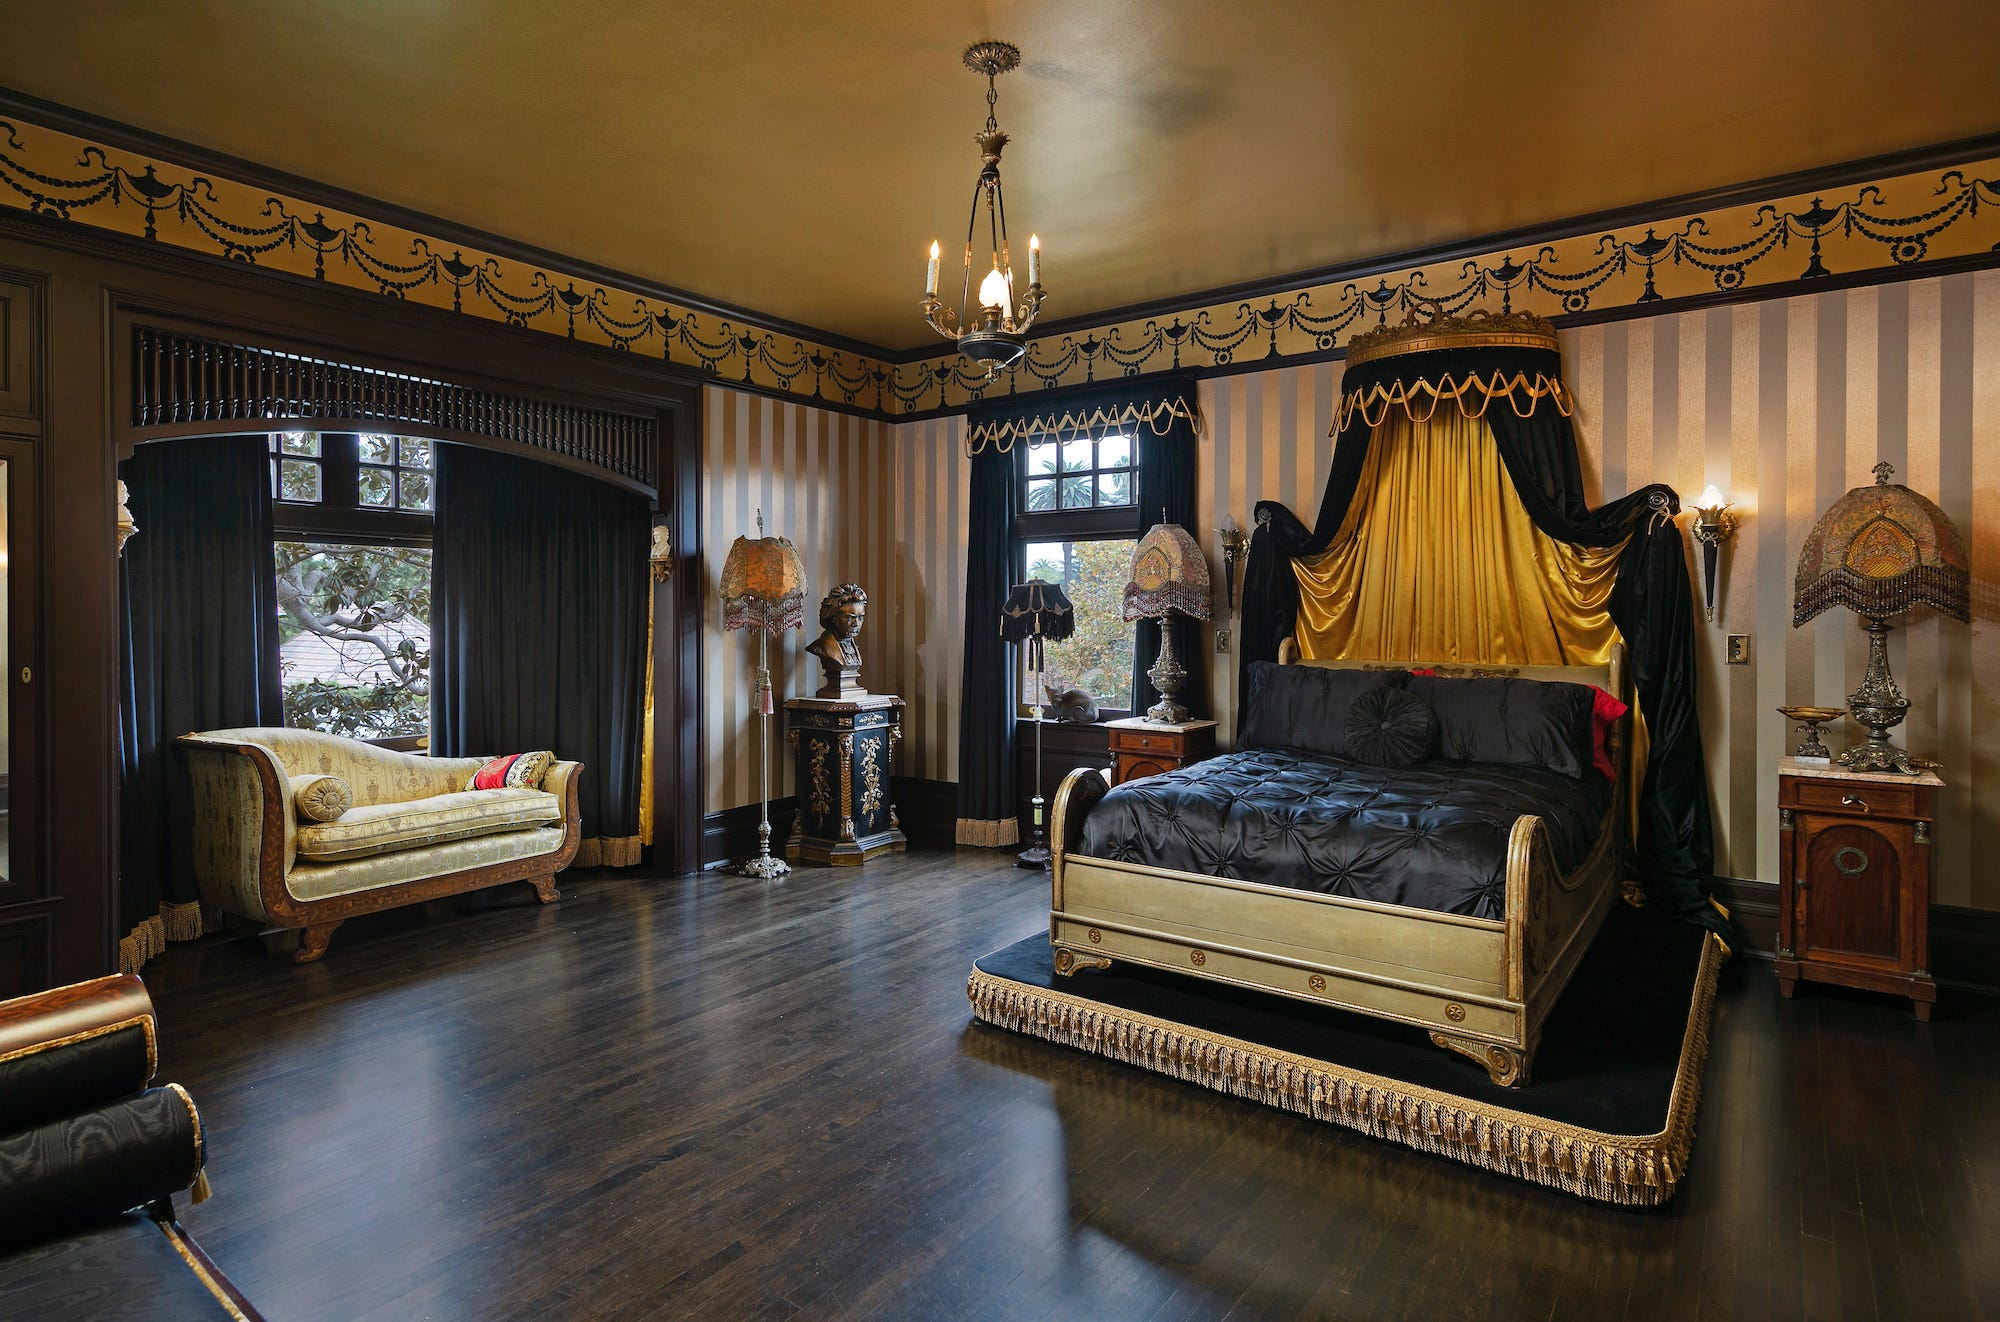 Ein Schlafzimmer in Kat Von Ds Haus in Kalifornien.